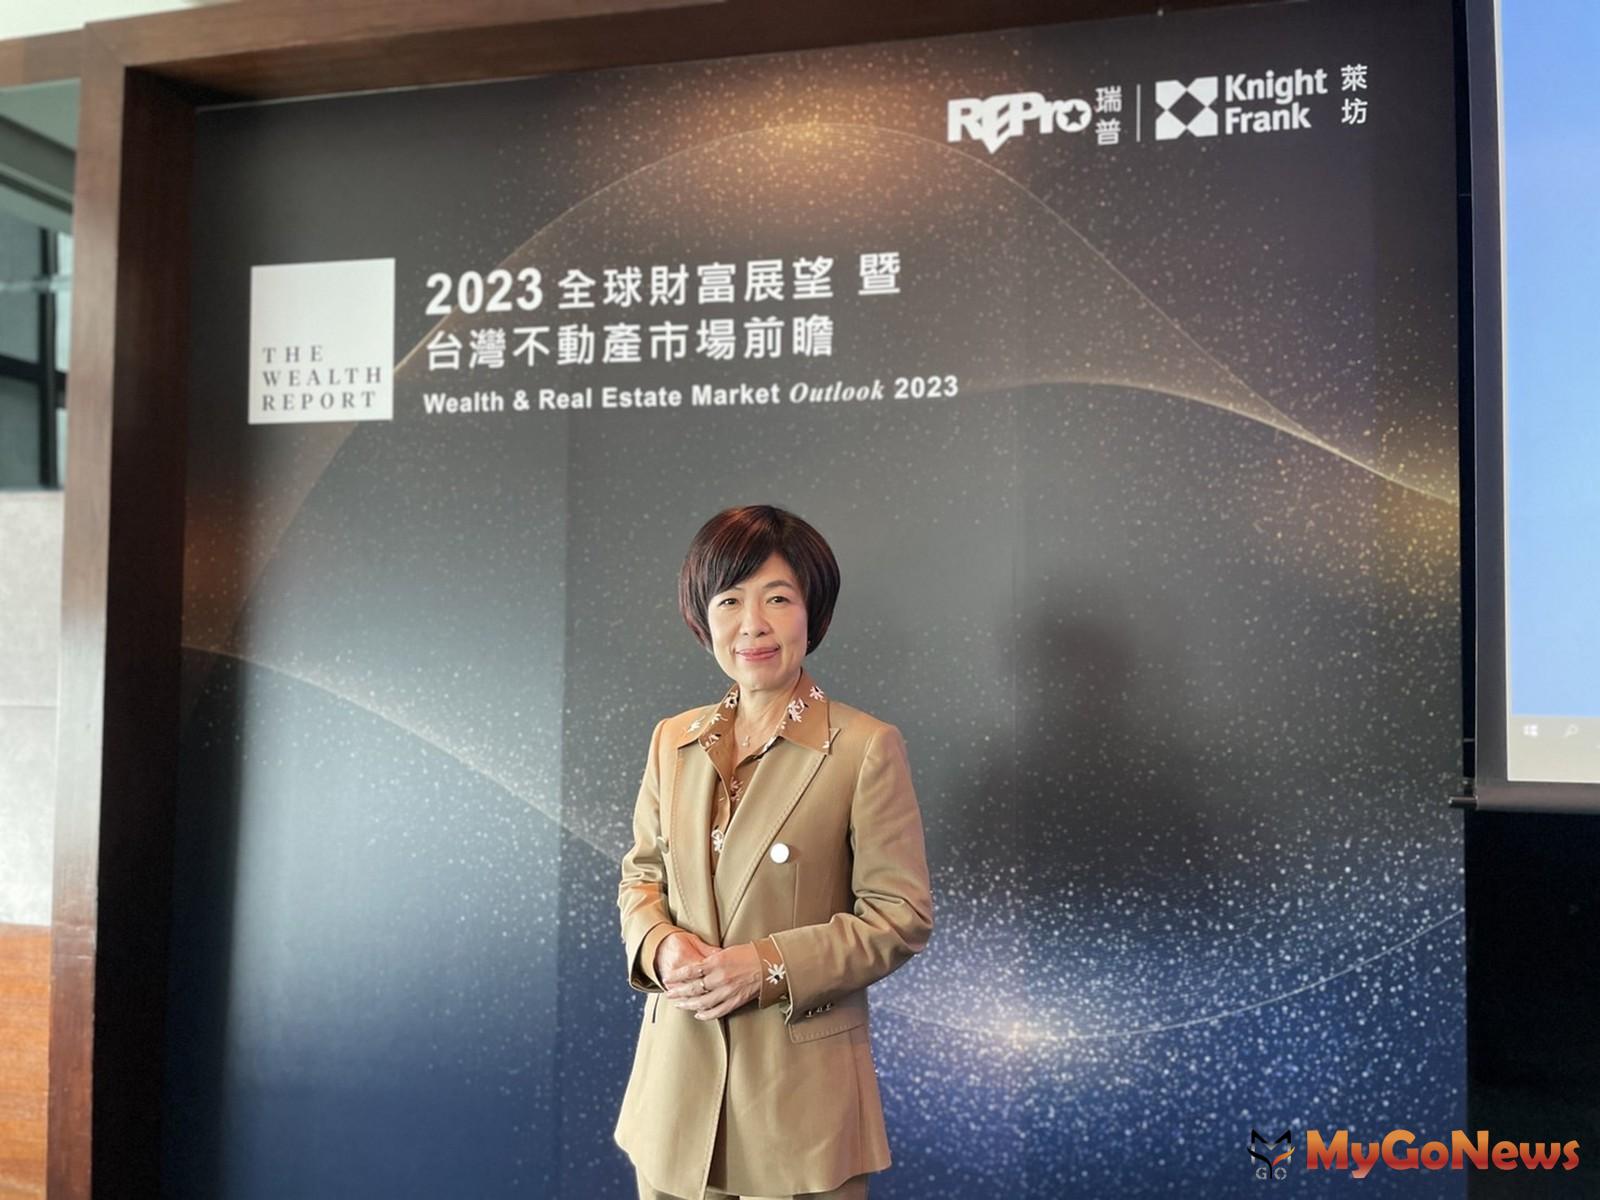 瑞普萊坊董事長劉美華針對2023年台灣不動產市場，提出3大機會和趨勢，包括：一、新型態辦公室興起。二、工業及倉儲物流需求持續成長。三、土地開發模式多元化。 MyGoNews房地產新聞 趨勢報導